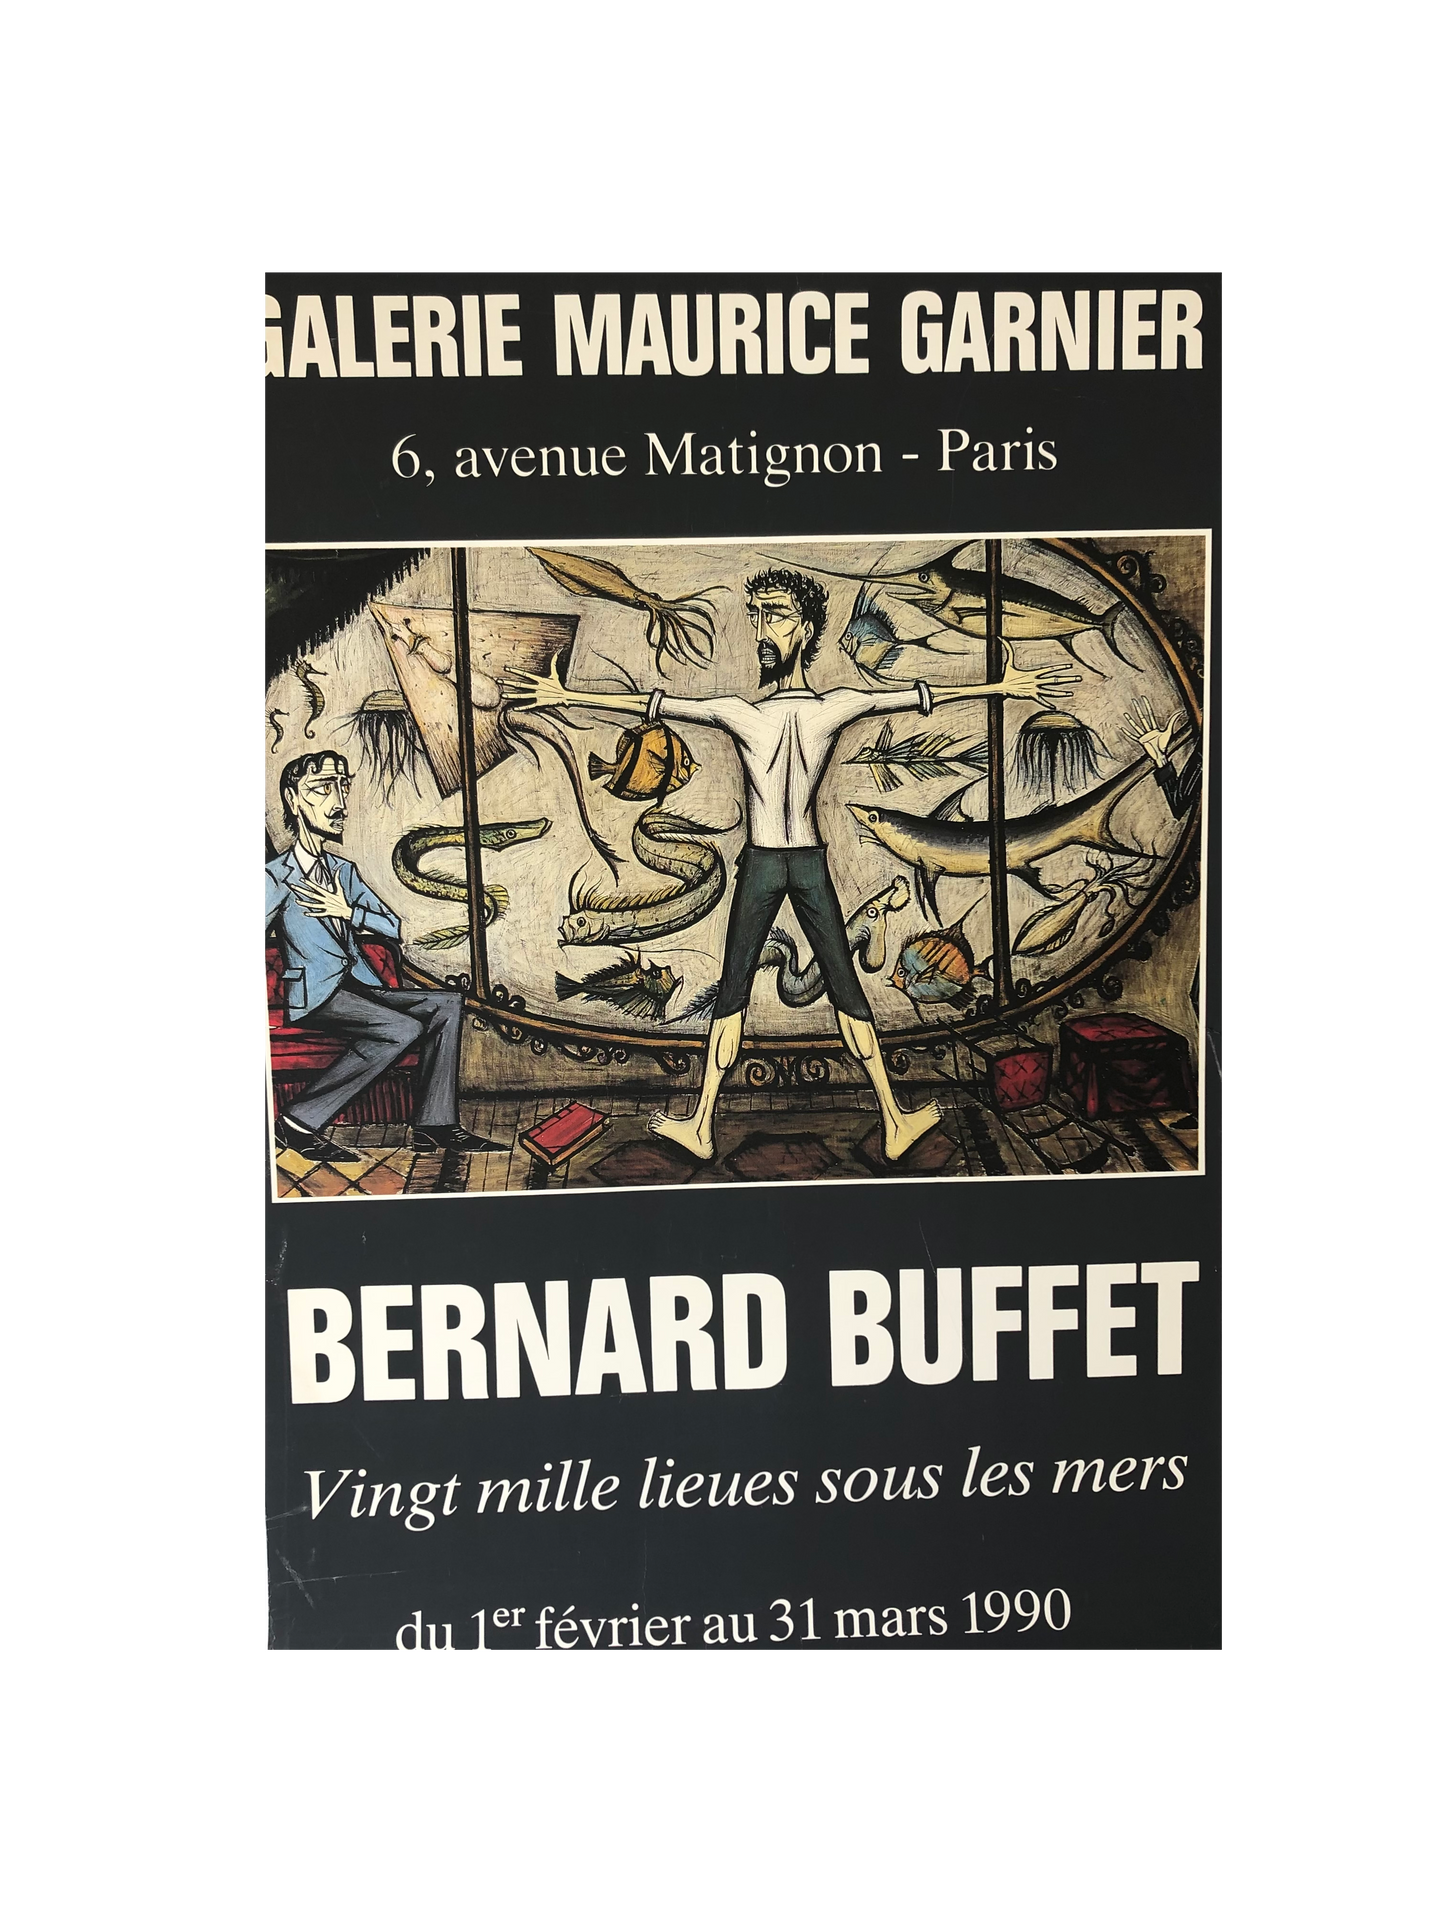 Bernard Buffet Exhibition Poster